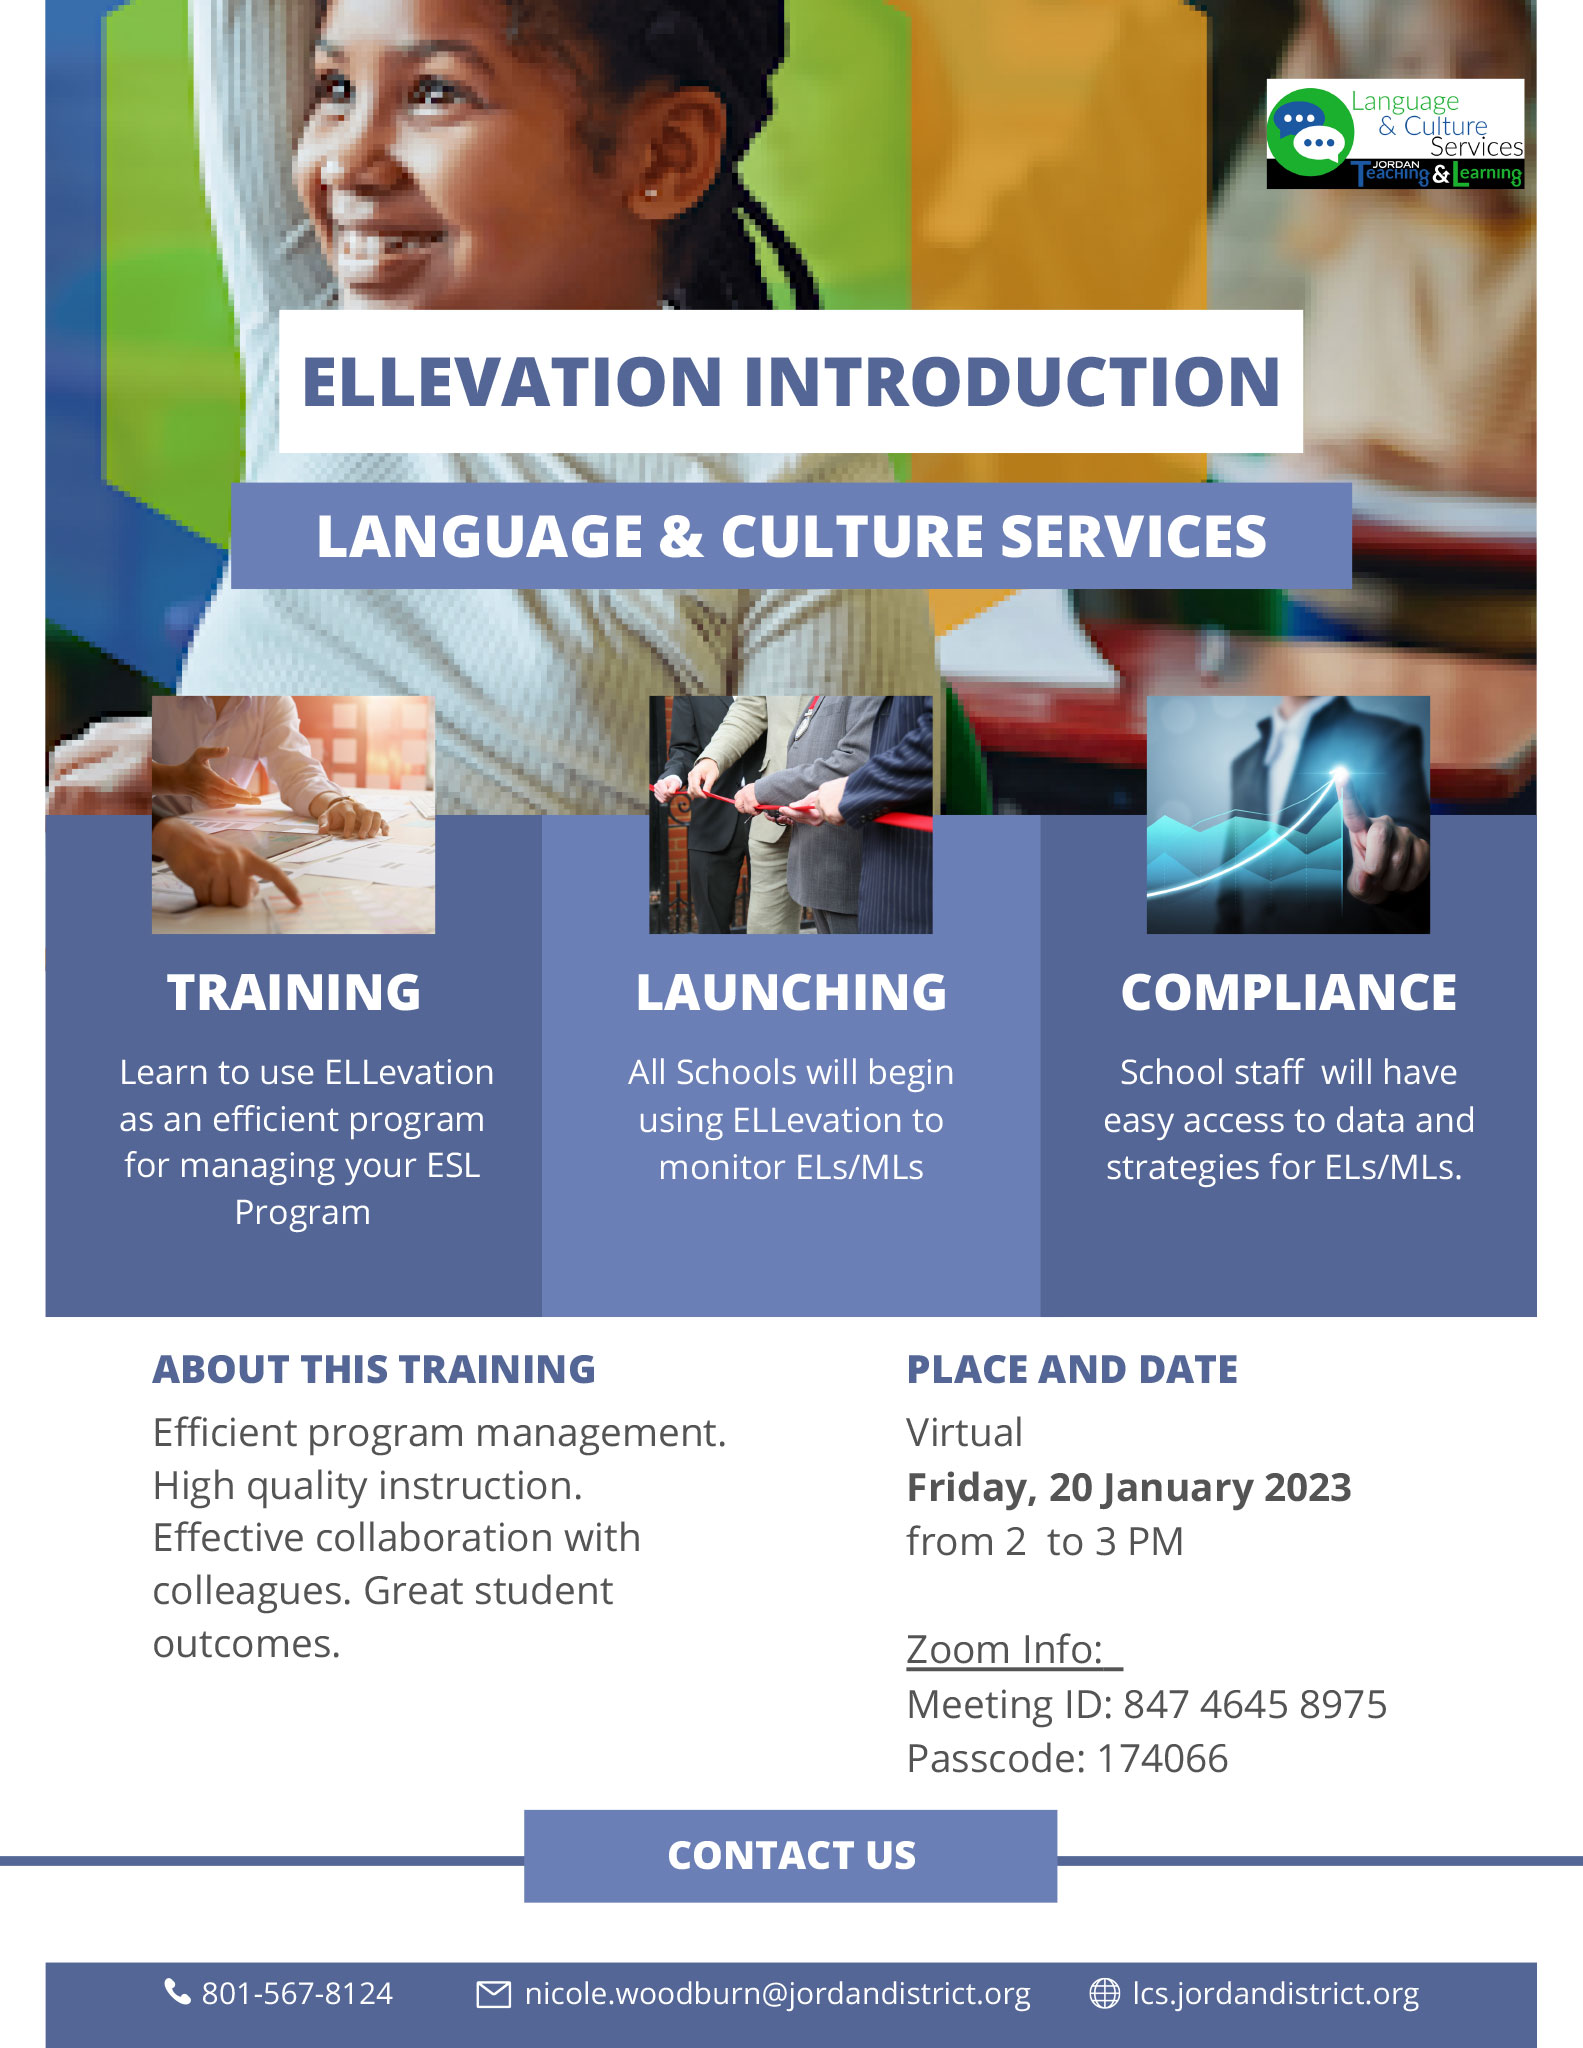 ELLevation Introduction Flyer